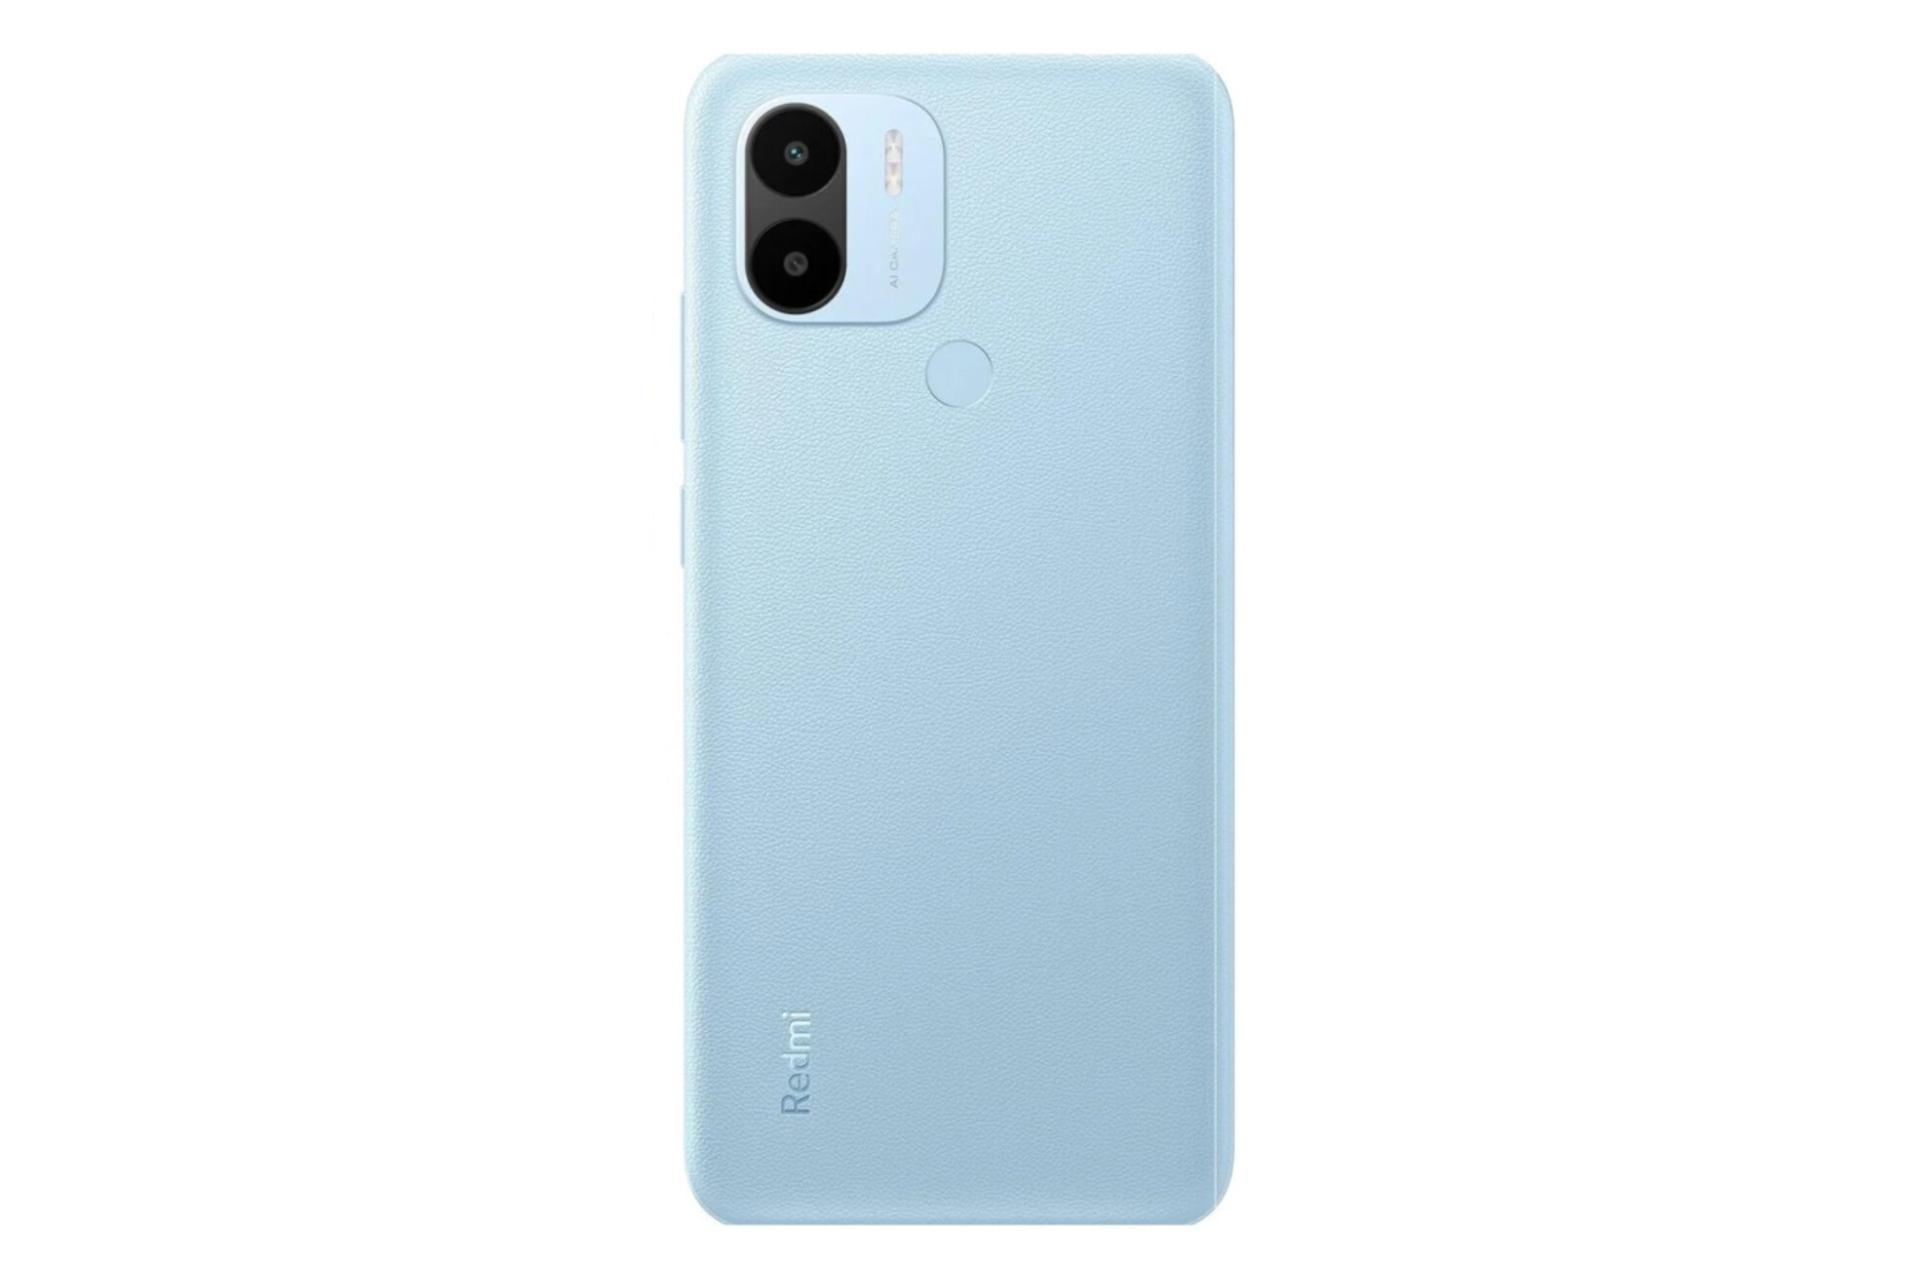 پنل پشت گوشی موبایل ردمی A1 پلاس شیائومی / Xiaomi Redmi A1 Plus آبی